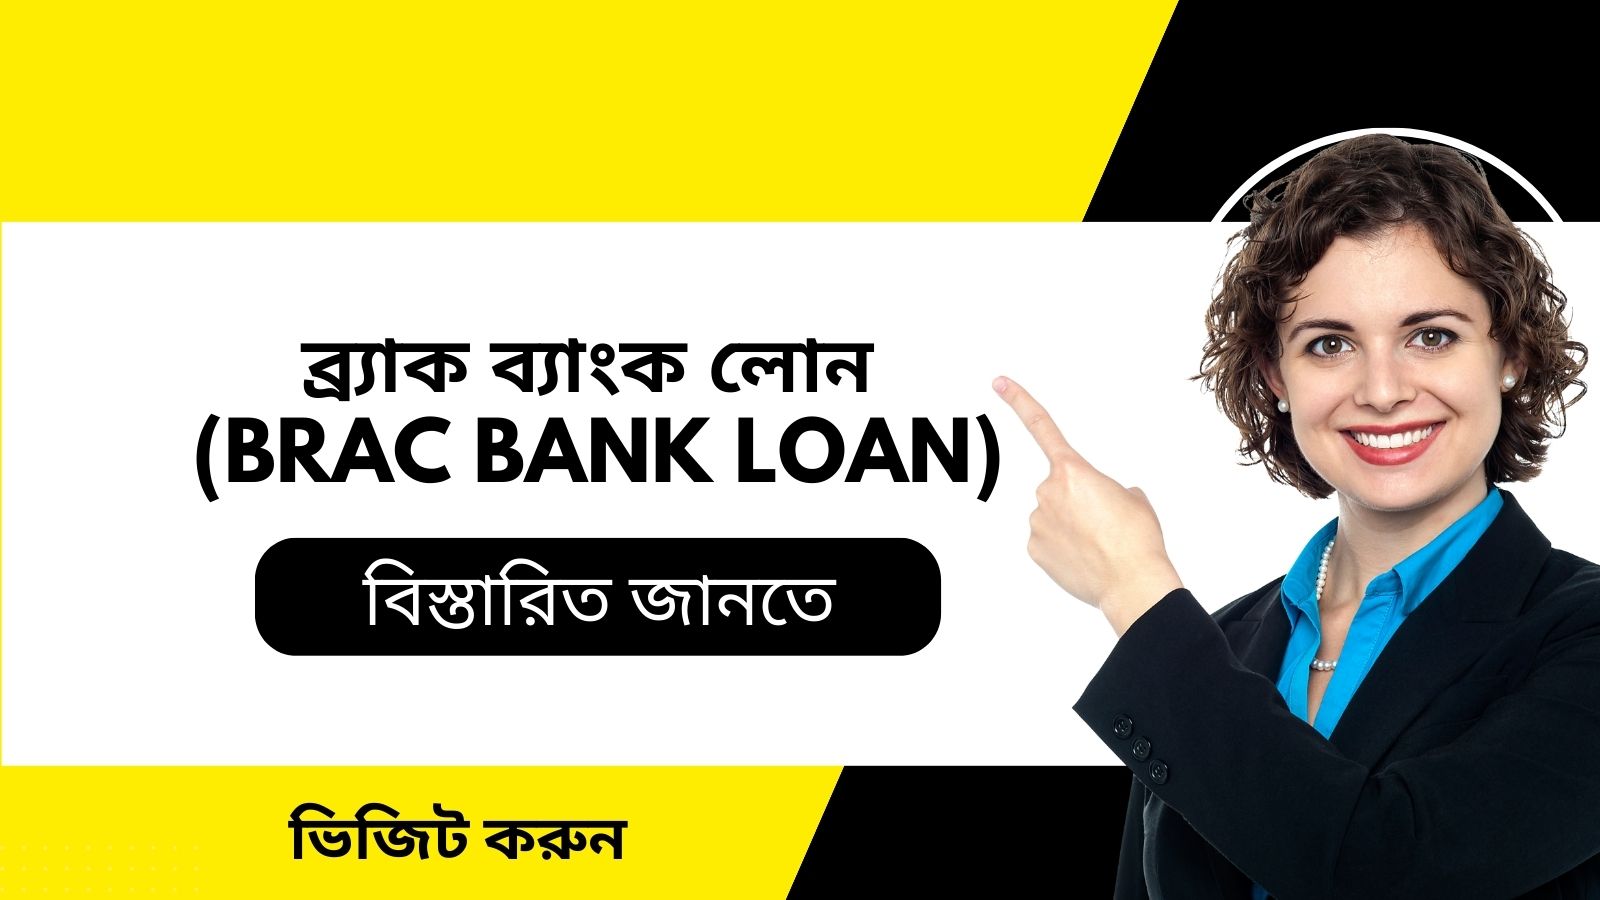 ব্র্যাক ব্যাংক লোন : (Brac Bank Loan)